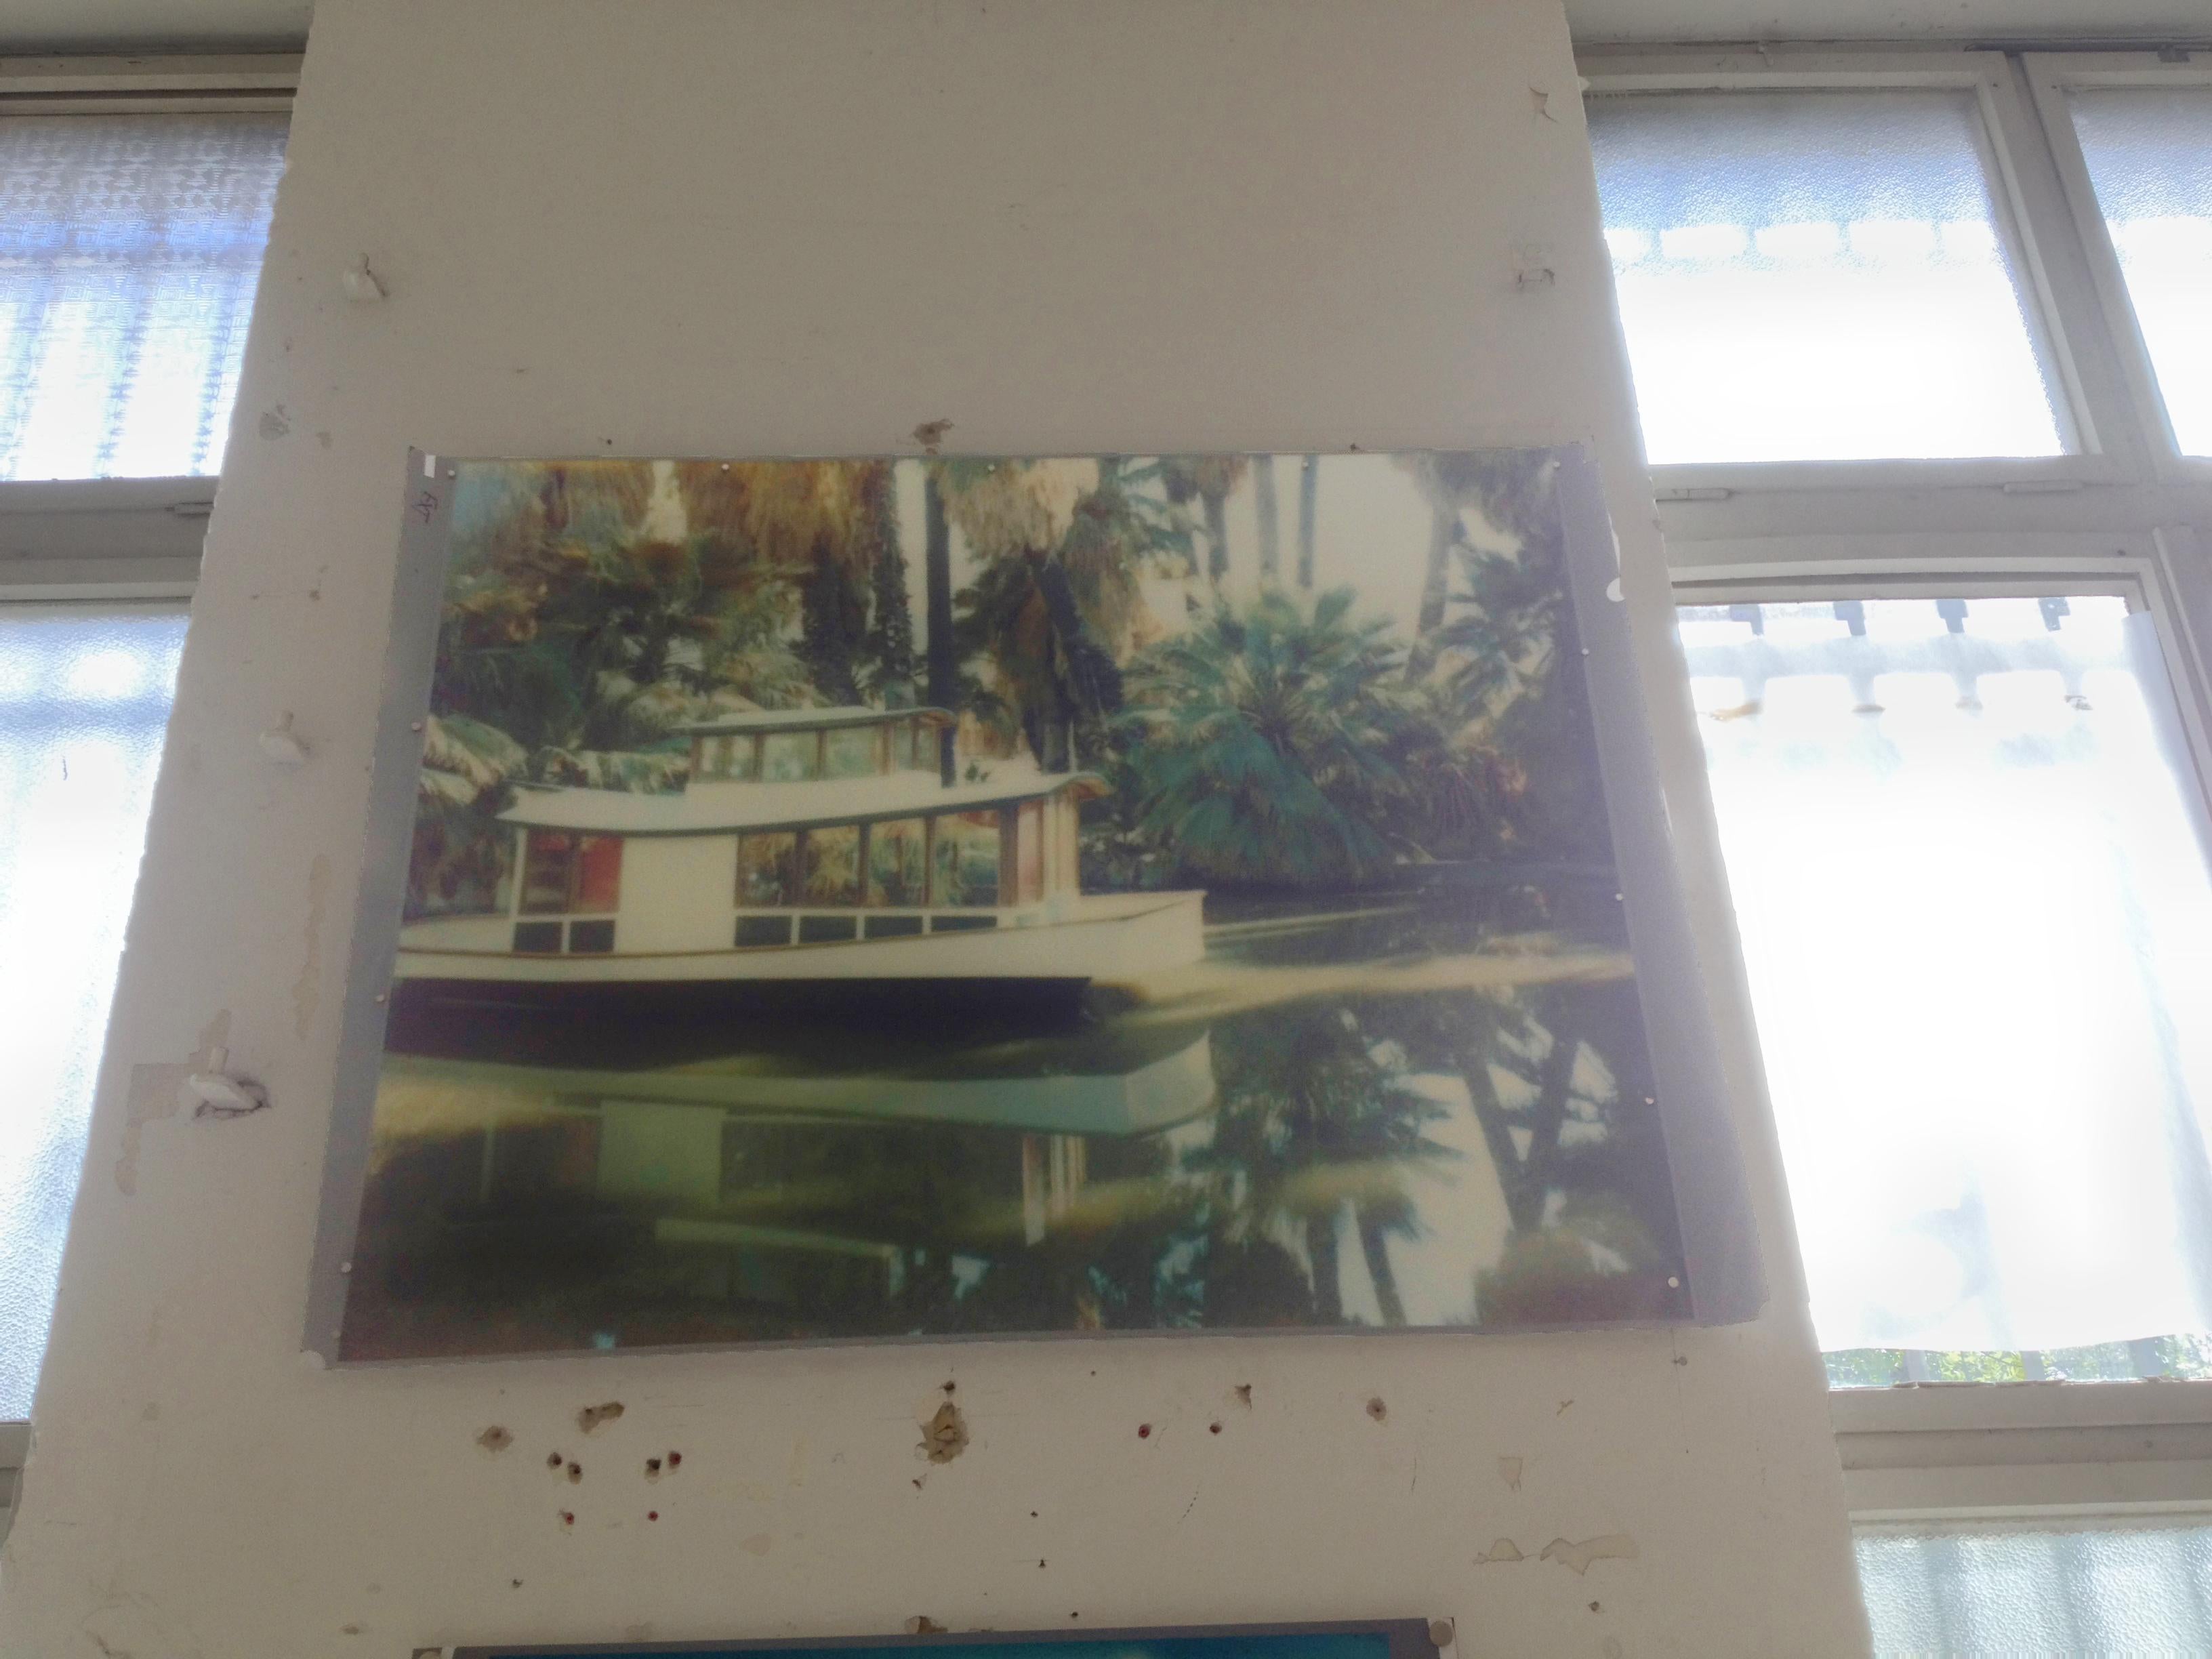 29 Palms Oasis (29 Palmen, Kalifornien) – Polaroid, analog, Vintage, Zeitgenössisch, Farbe – Photograph von Stefanie Schneider